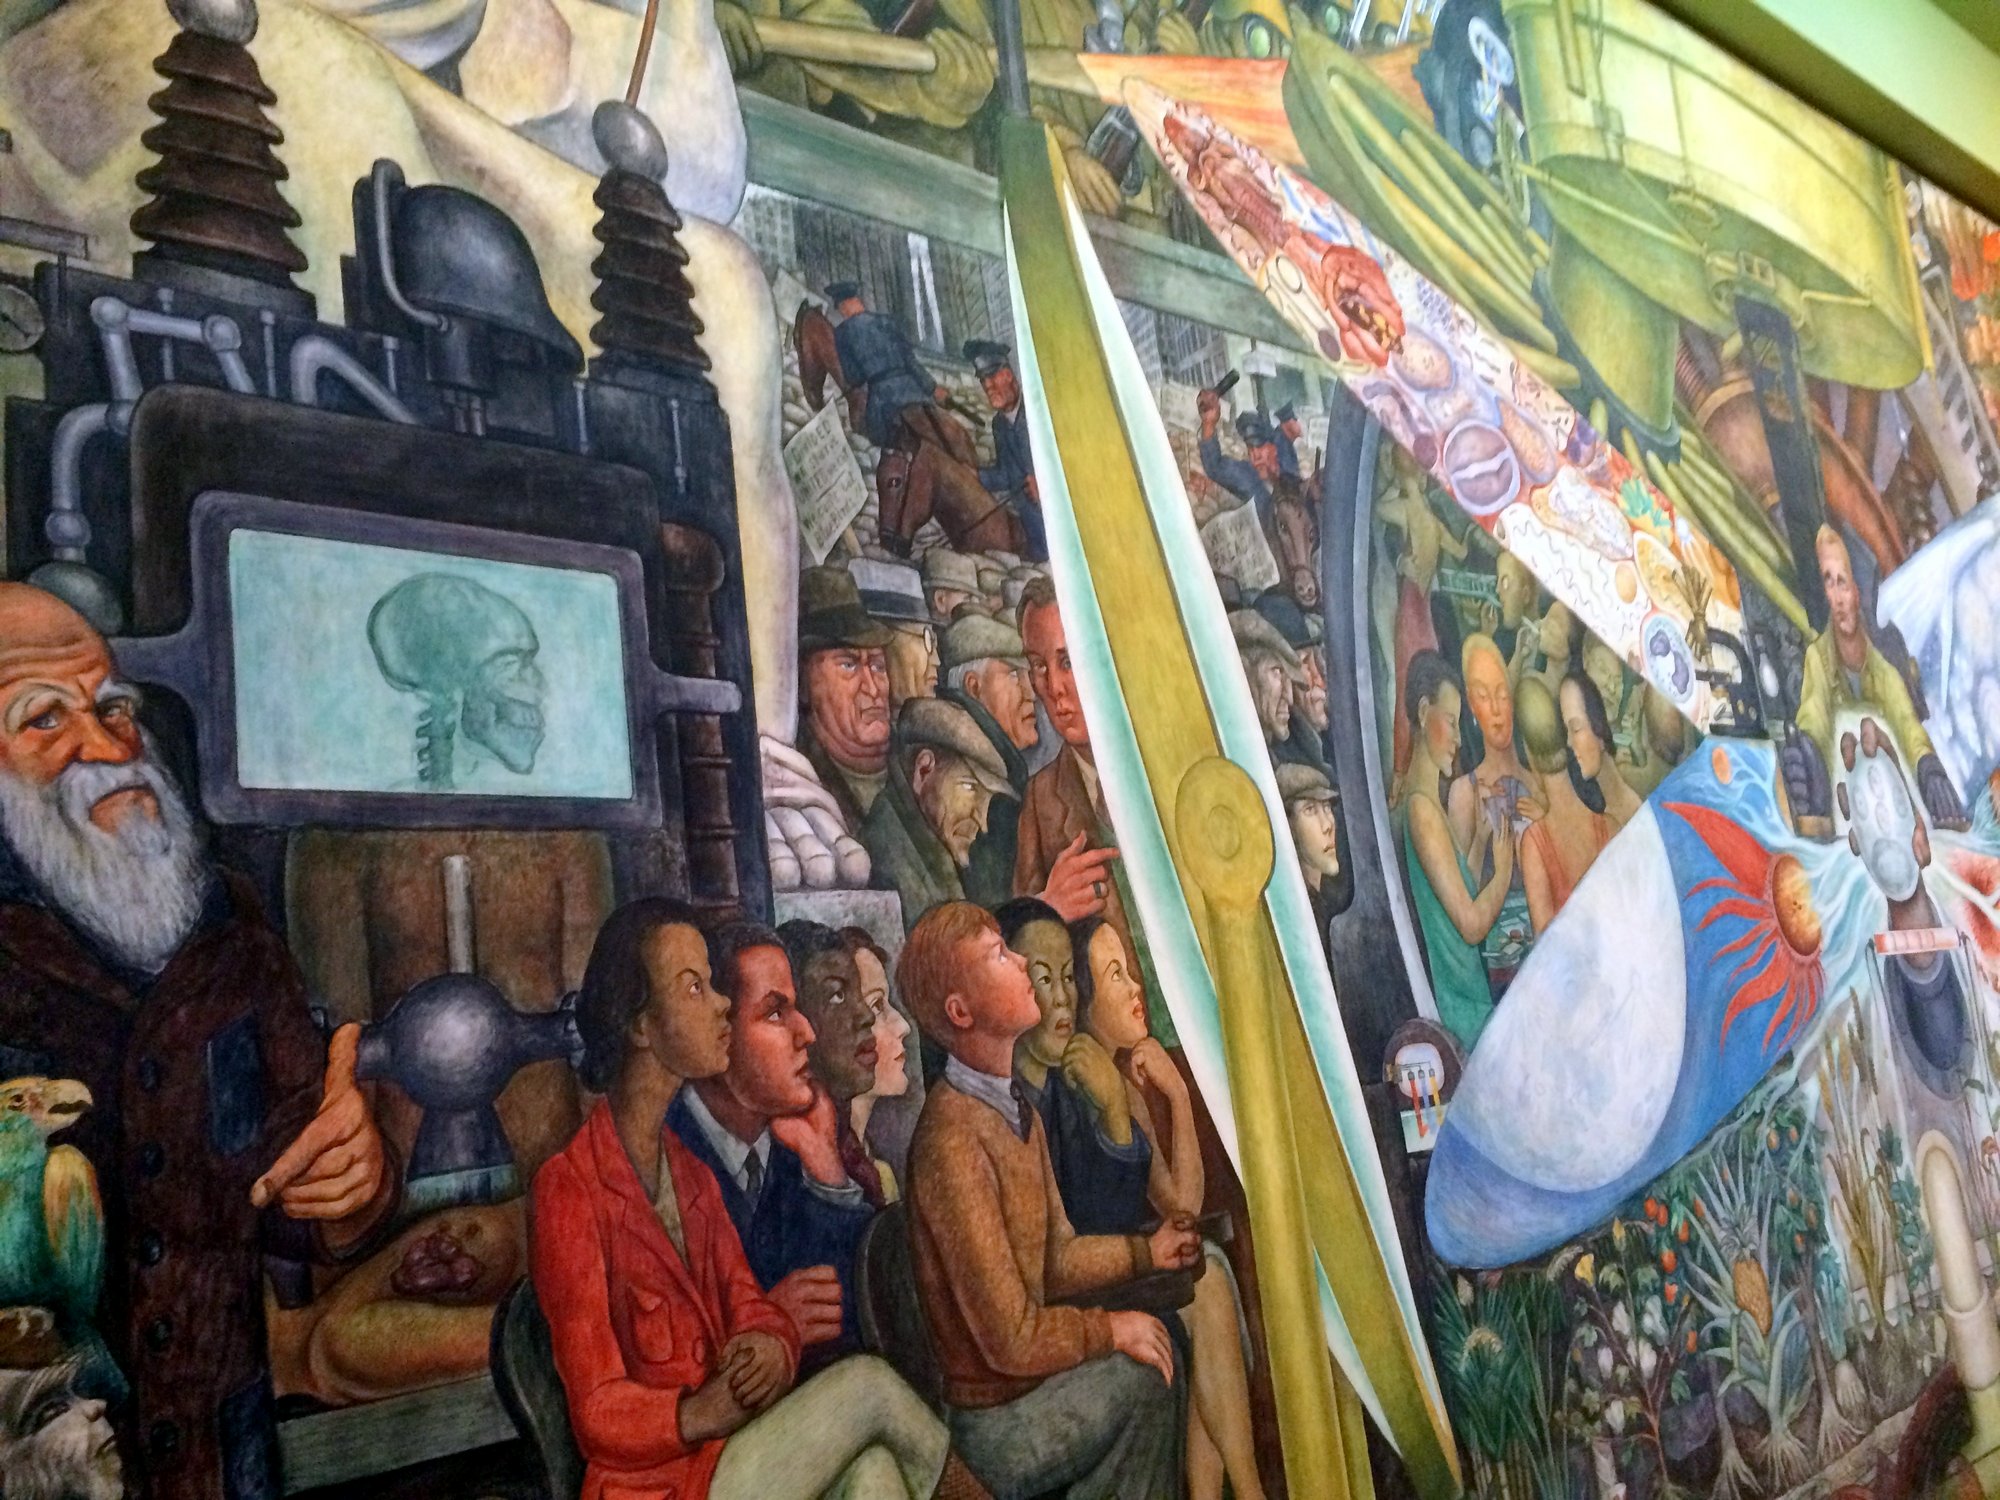 Diego Rivera Mural at Palacio de Bellas Artes, Mexico City. 